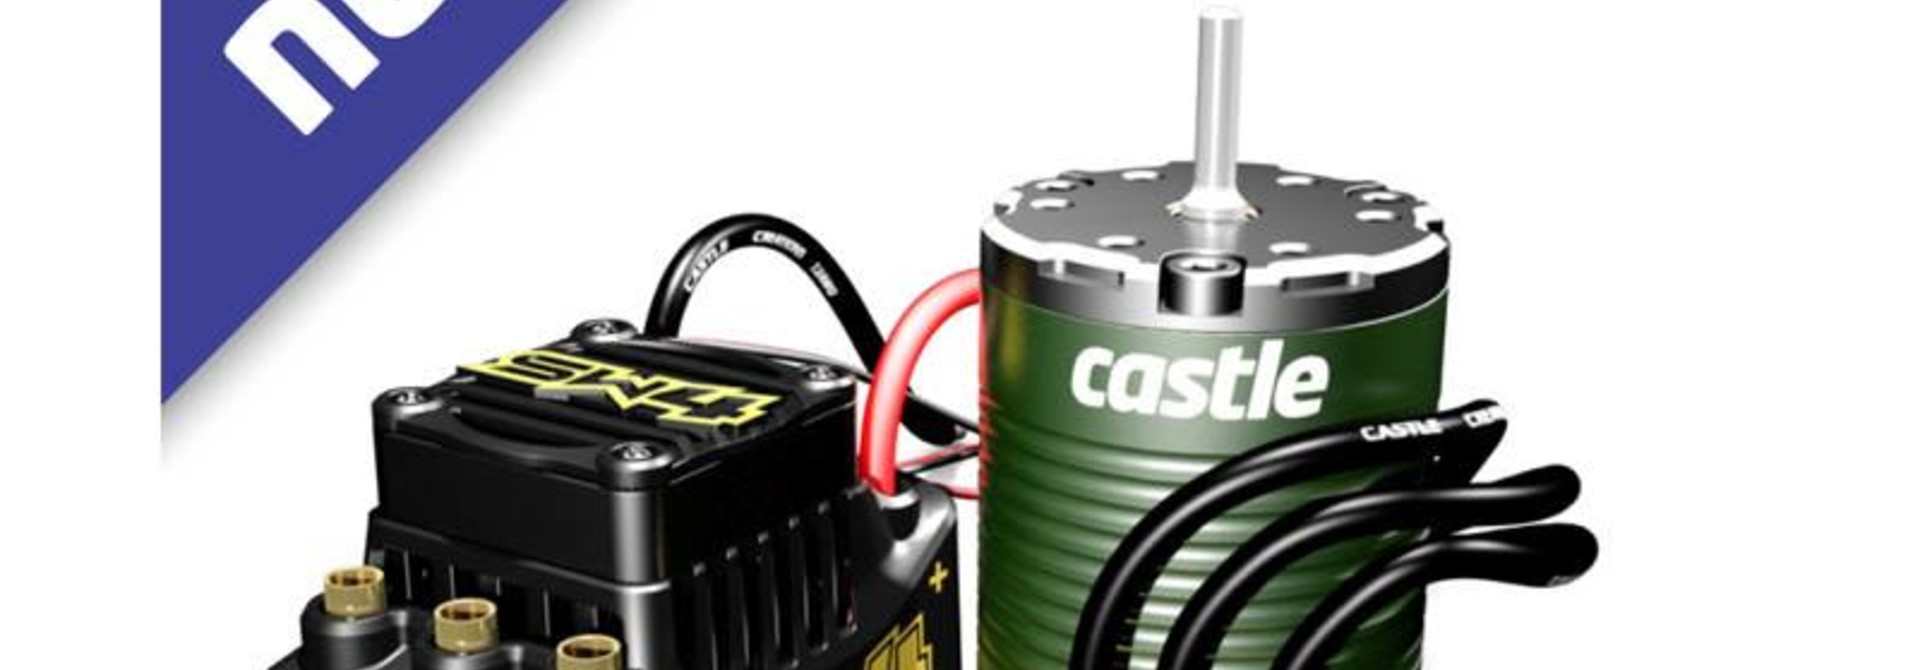 Castle - Sidewinder SW4, 12.6V, 2A BEC, WP Sensorless ESC W/1410-3800 5MM Sensored motor